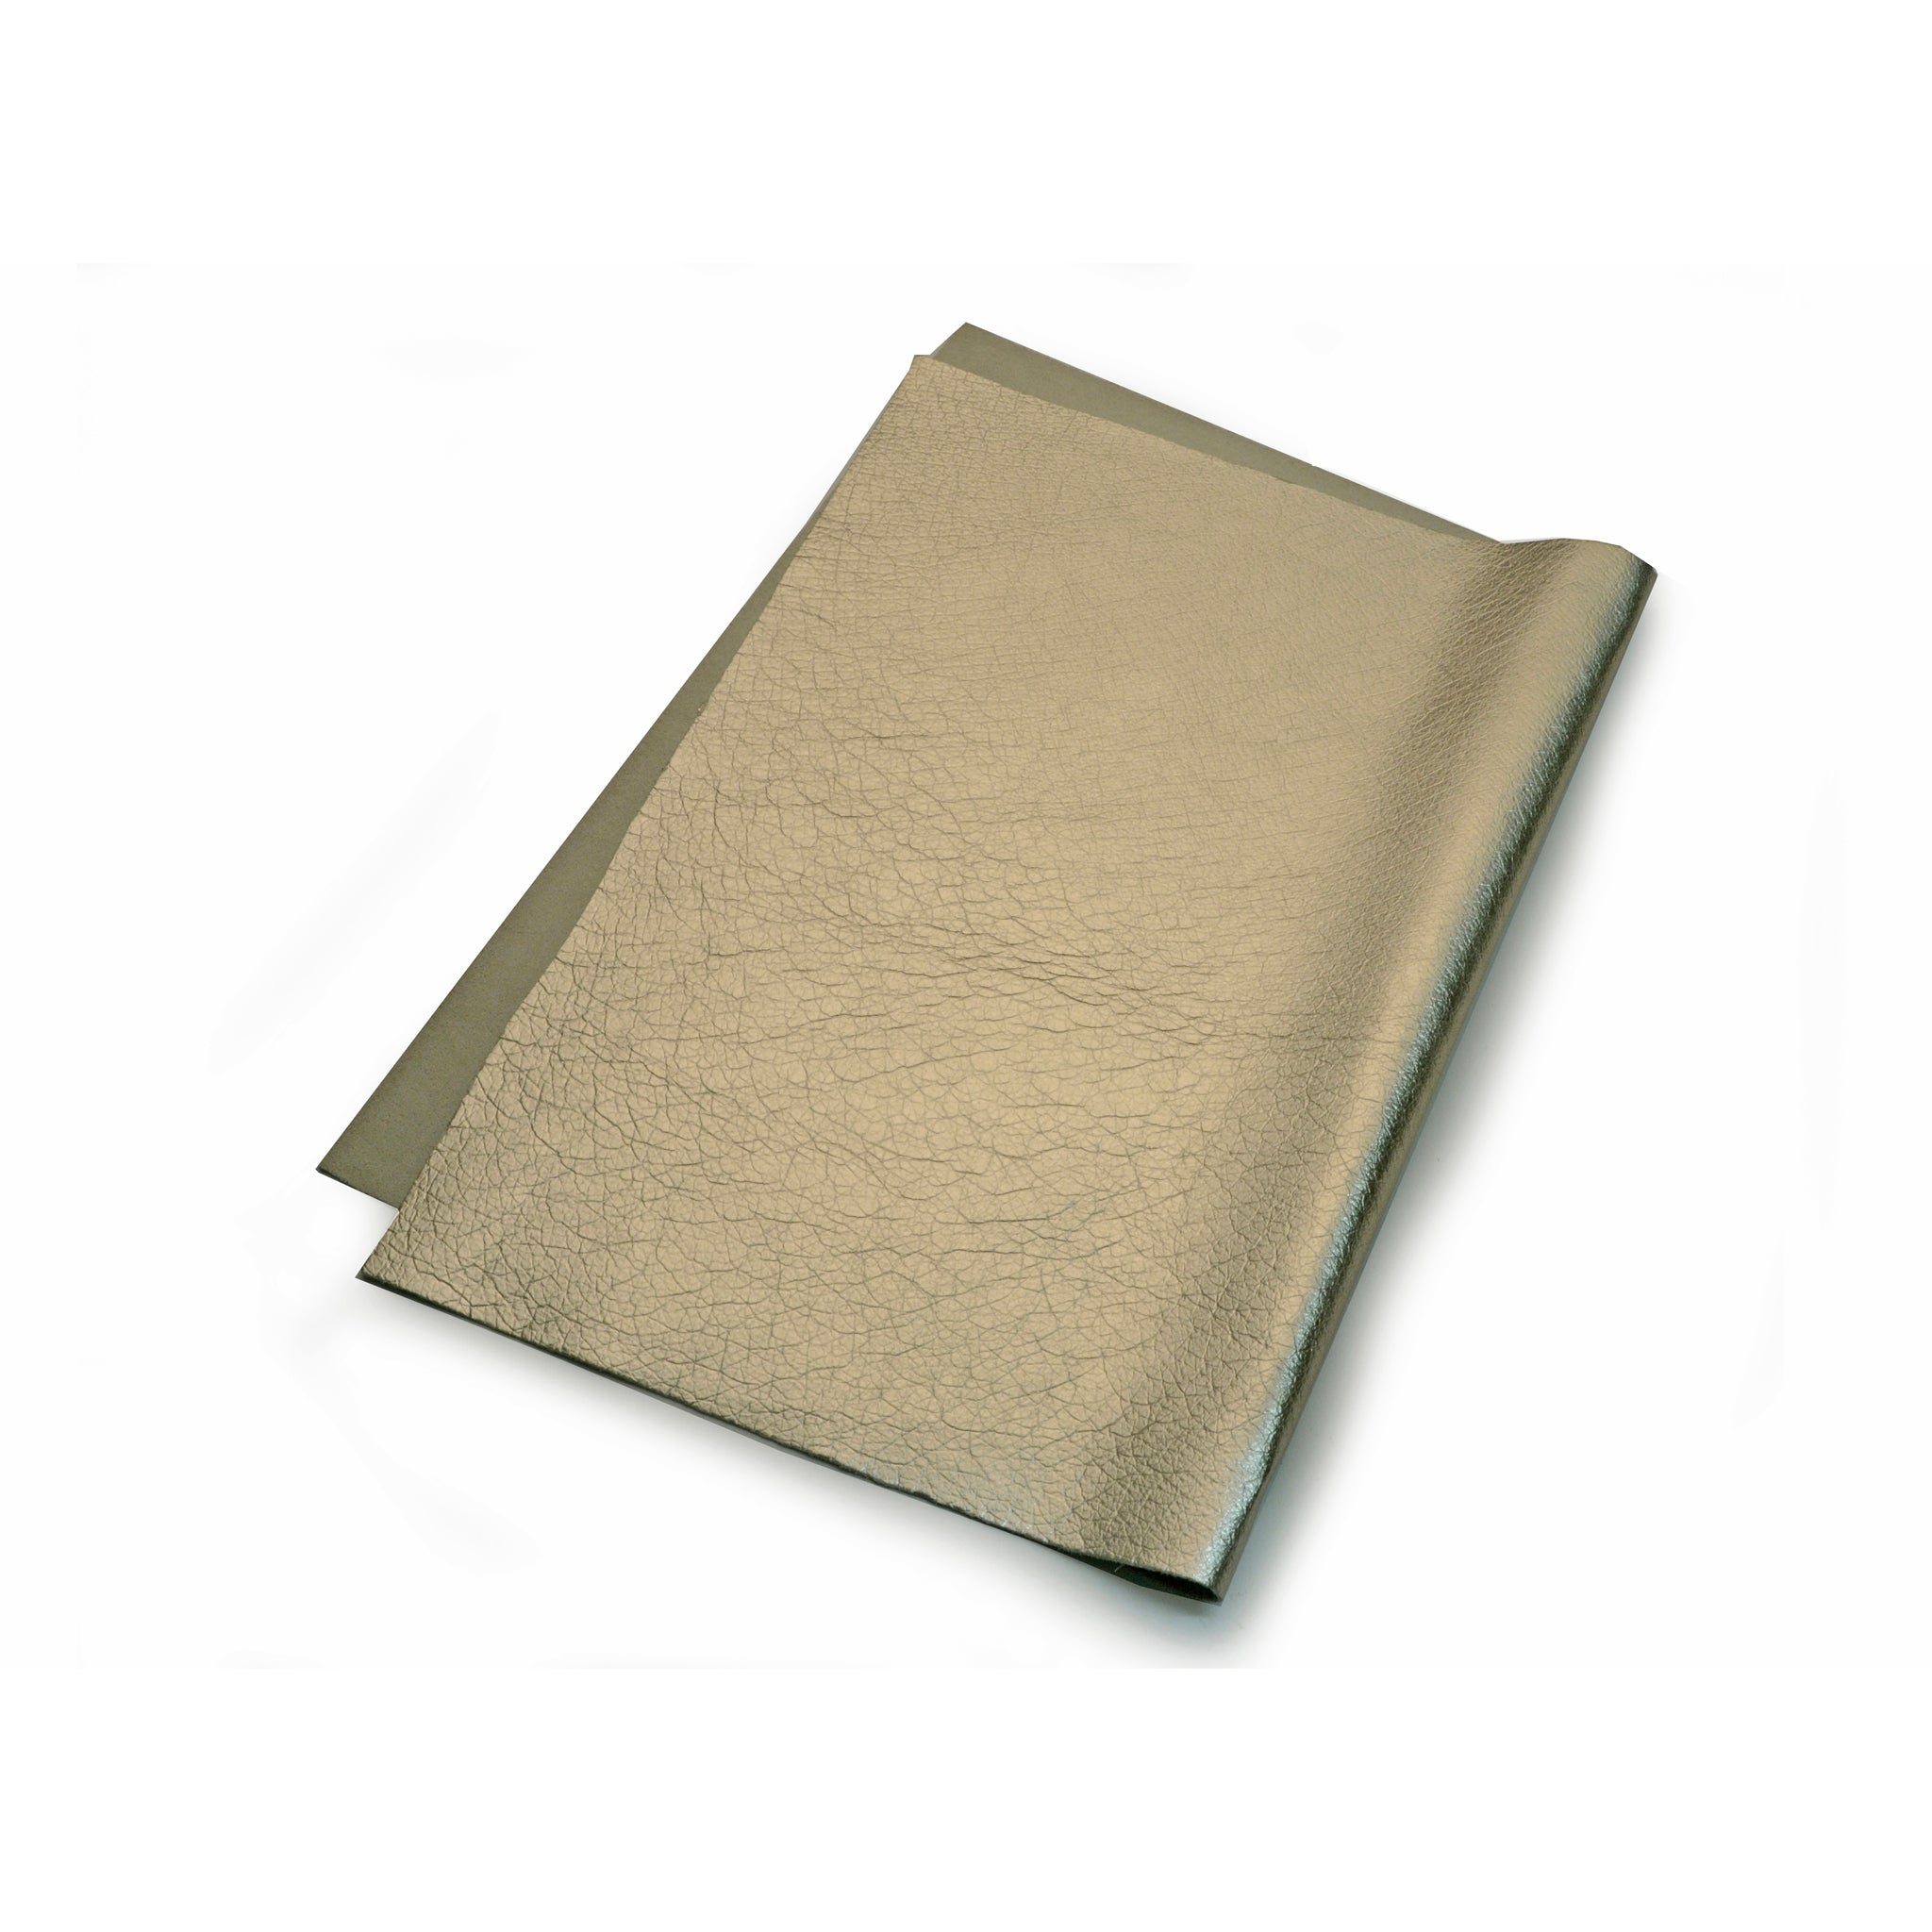 Tin Metallic Foil Leather